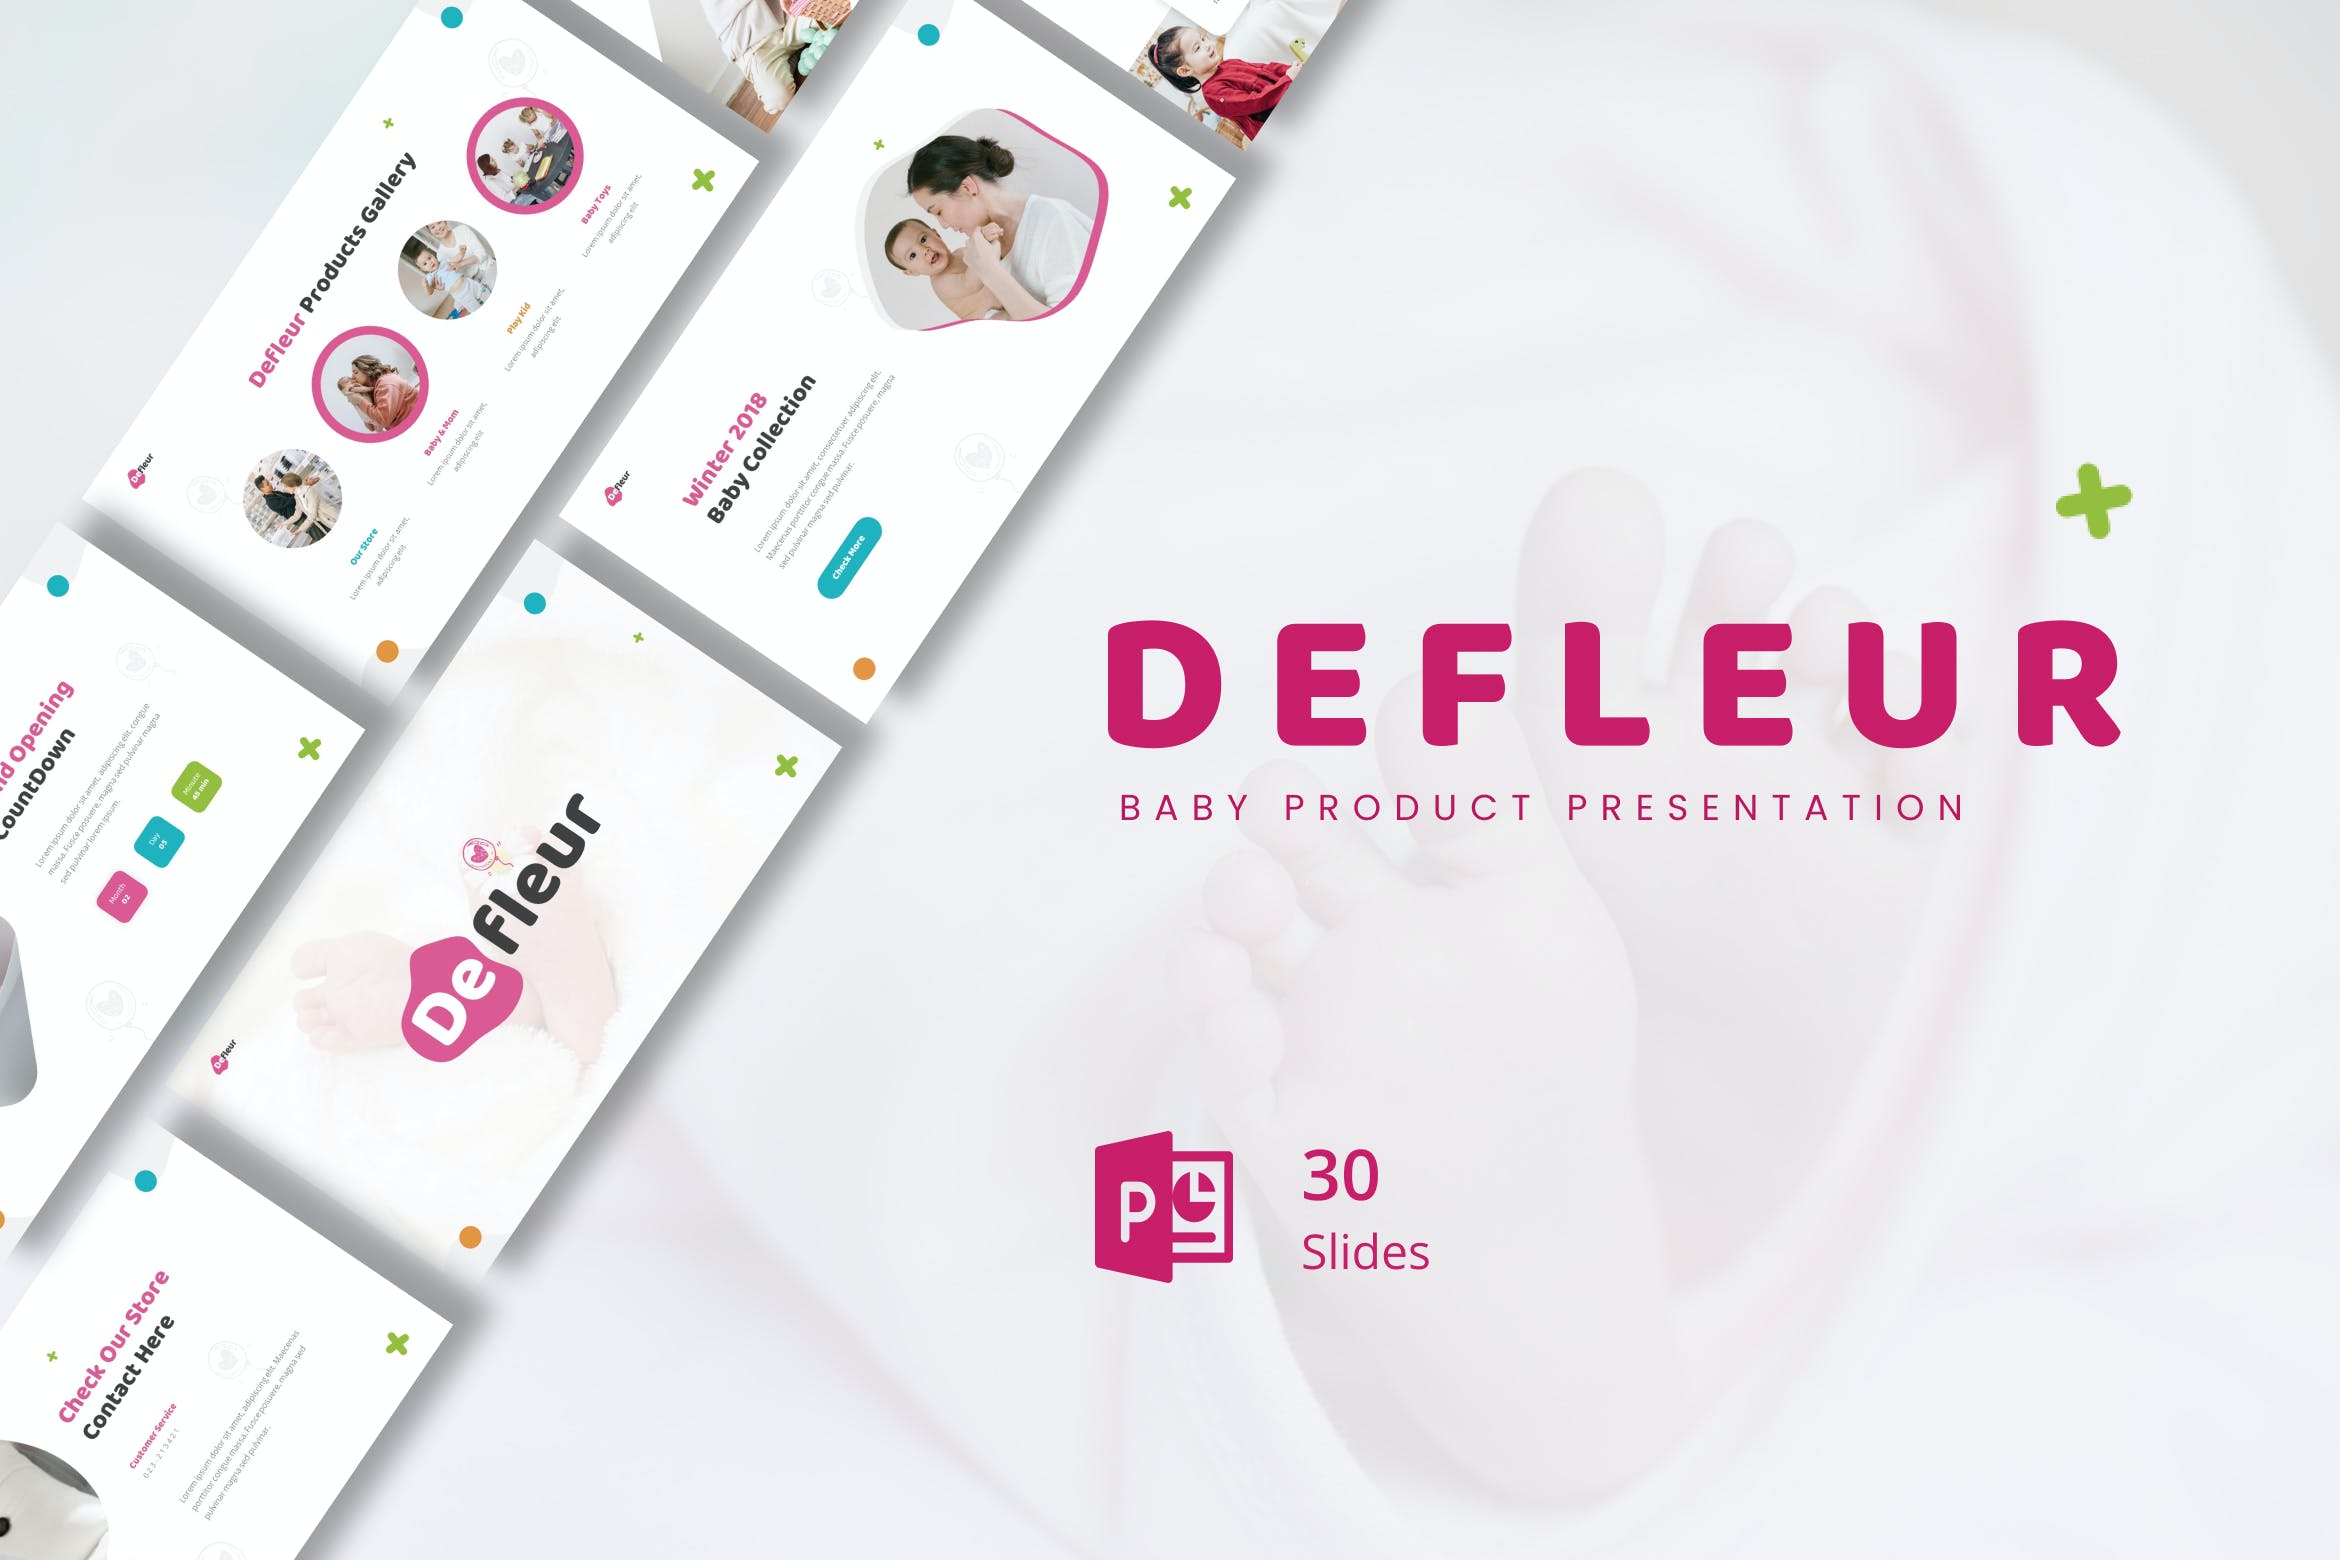 婴儿产品演示文稿PPT模板 Defleur – Baby Product Presentation PowerPoint 幻灯图表 第1张